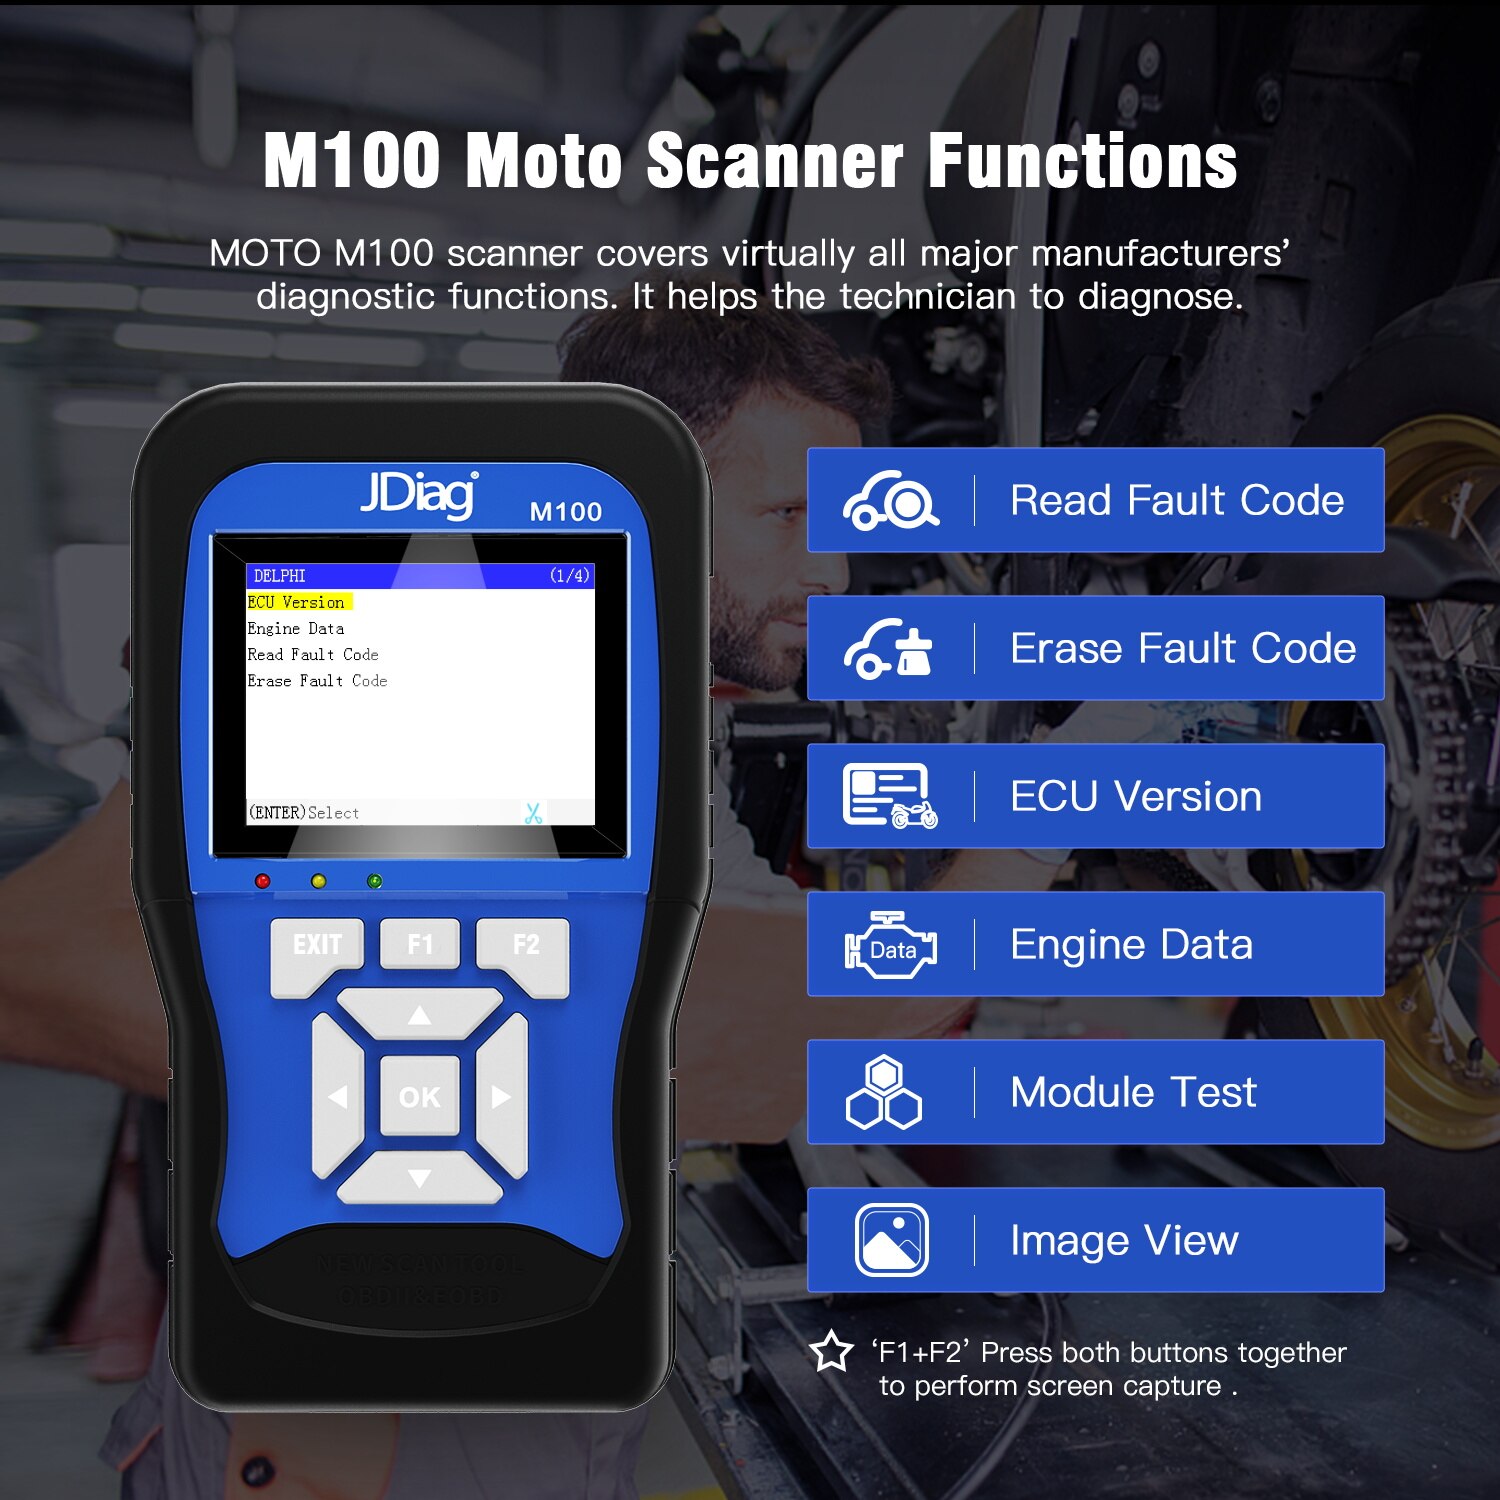 JDiag M100 Motorcycle Diagnostic Tool for k-awasaki y-amaha s-uzuki etc Motorbike Scanner Motor Scan Battery Tester